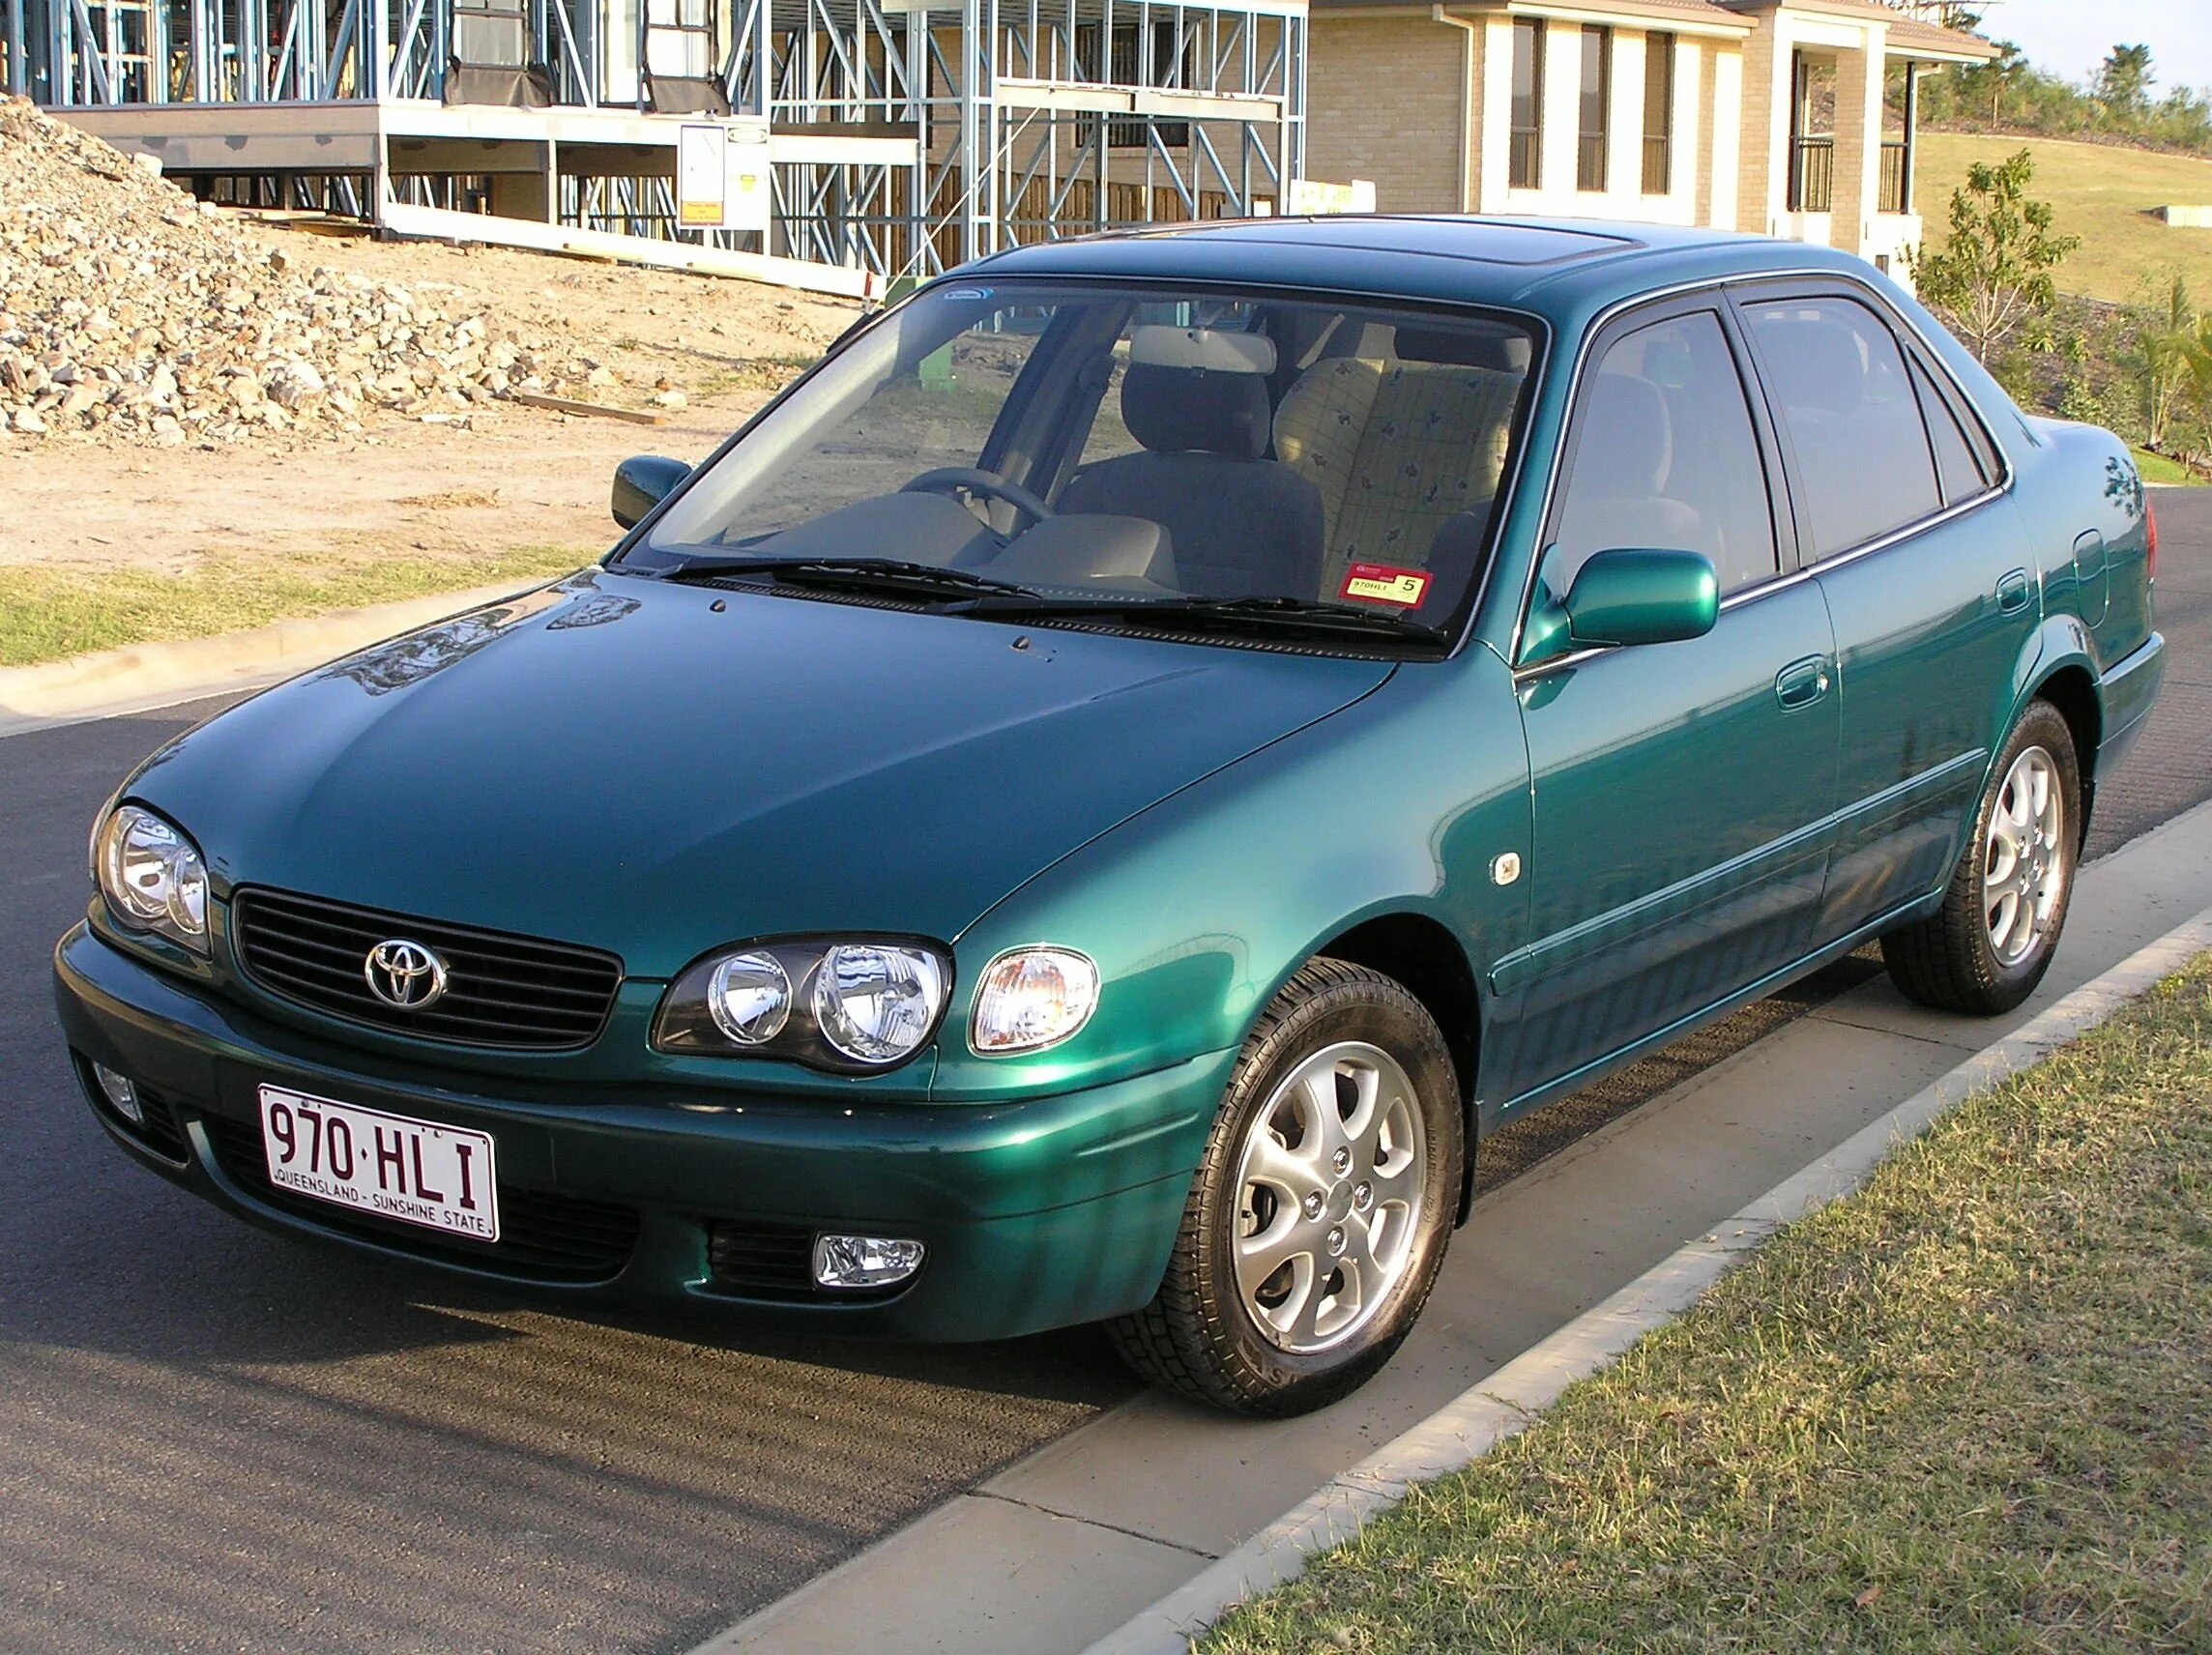 1999 год характеристика. Toyota Corolla 1999 седан. Toyota Corolla e110 седан. Тойота Королла 1999 седан. Тойота Королла 1999г.